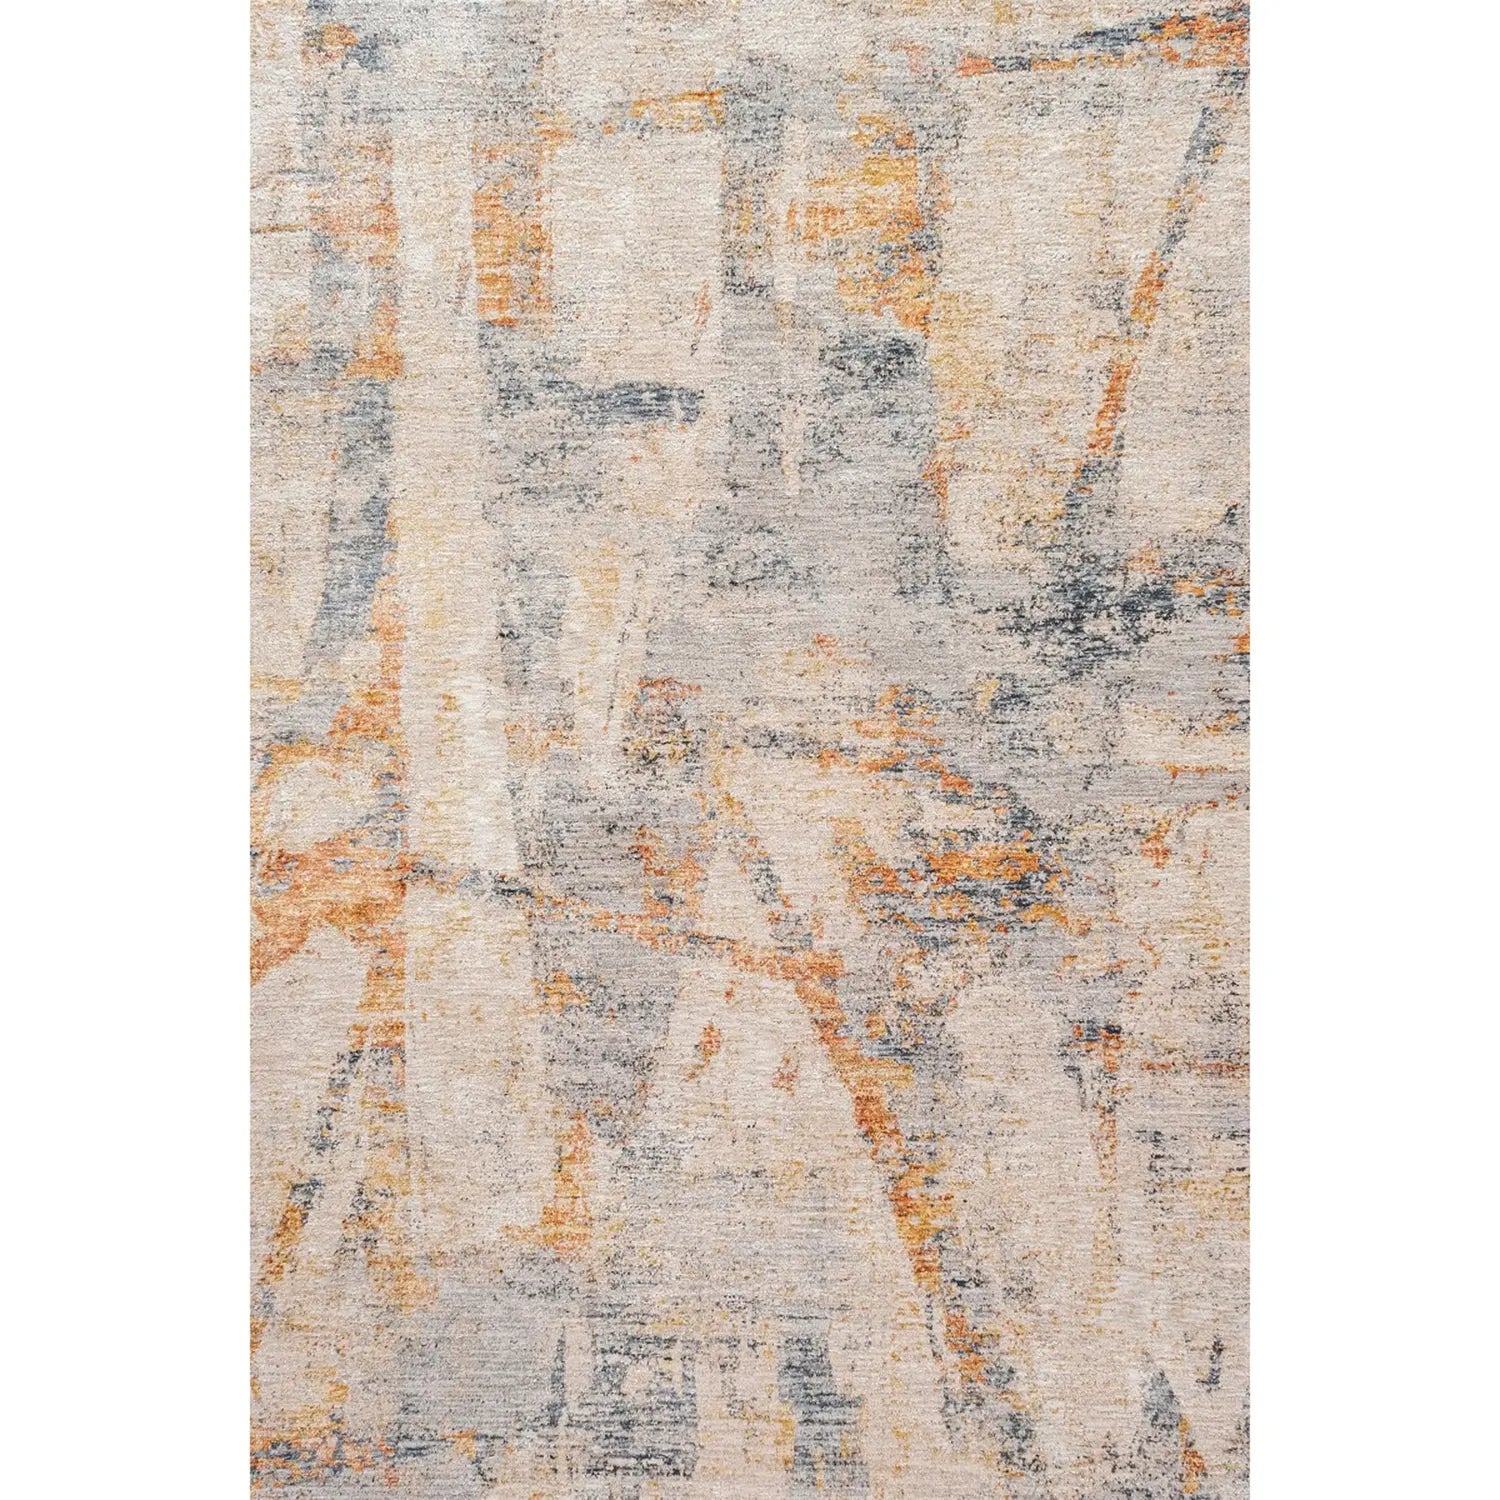 Elysian Modern Abstract Rug in Rust DecoRug